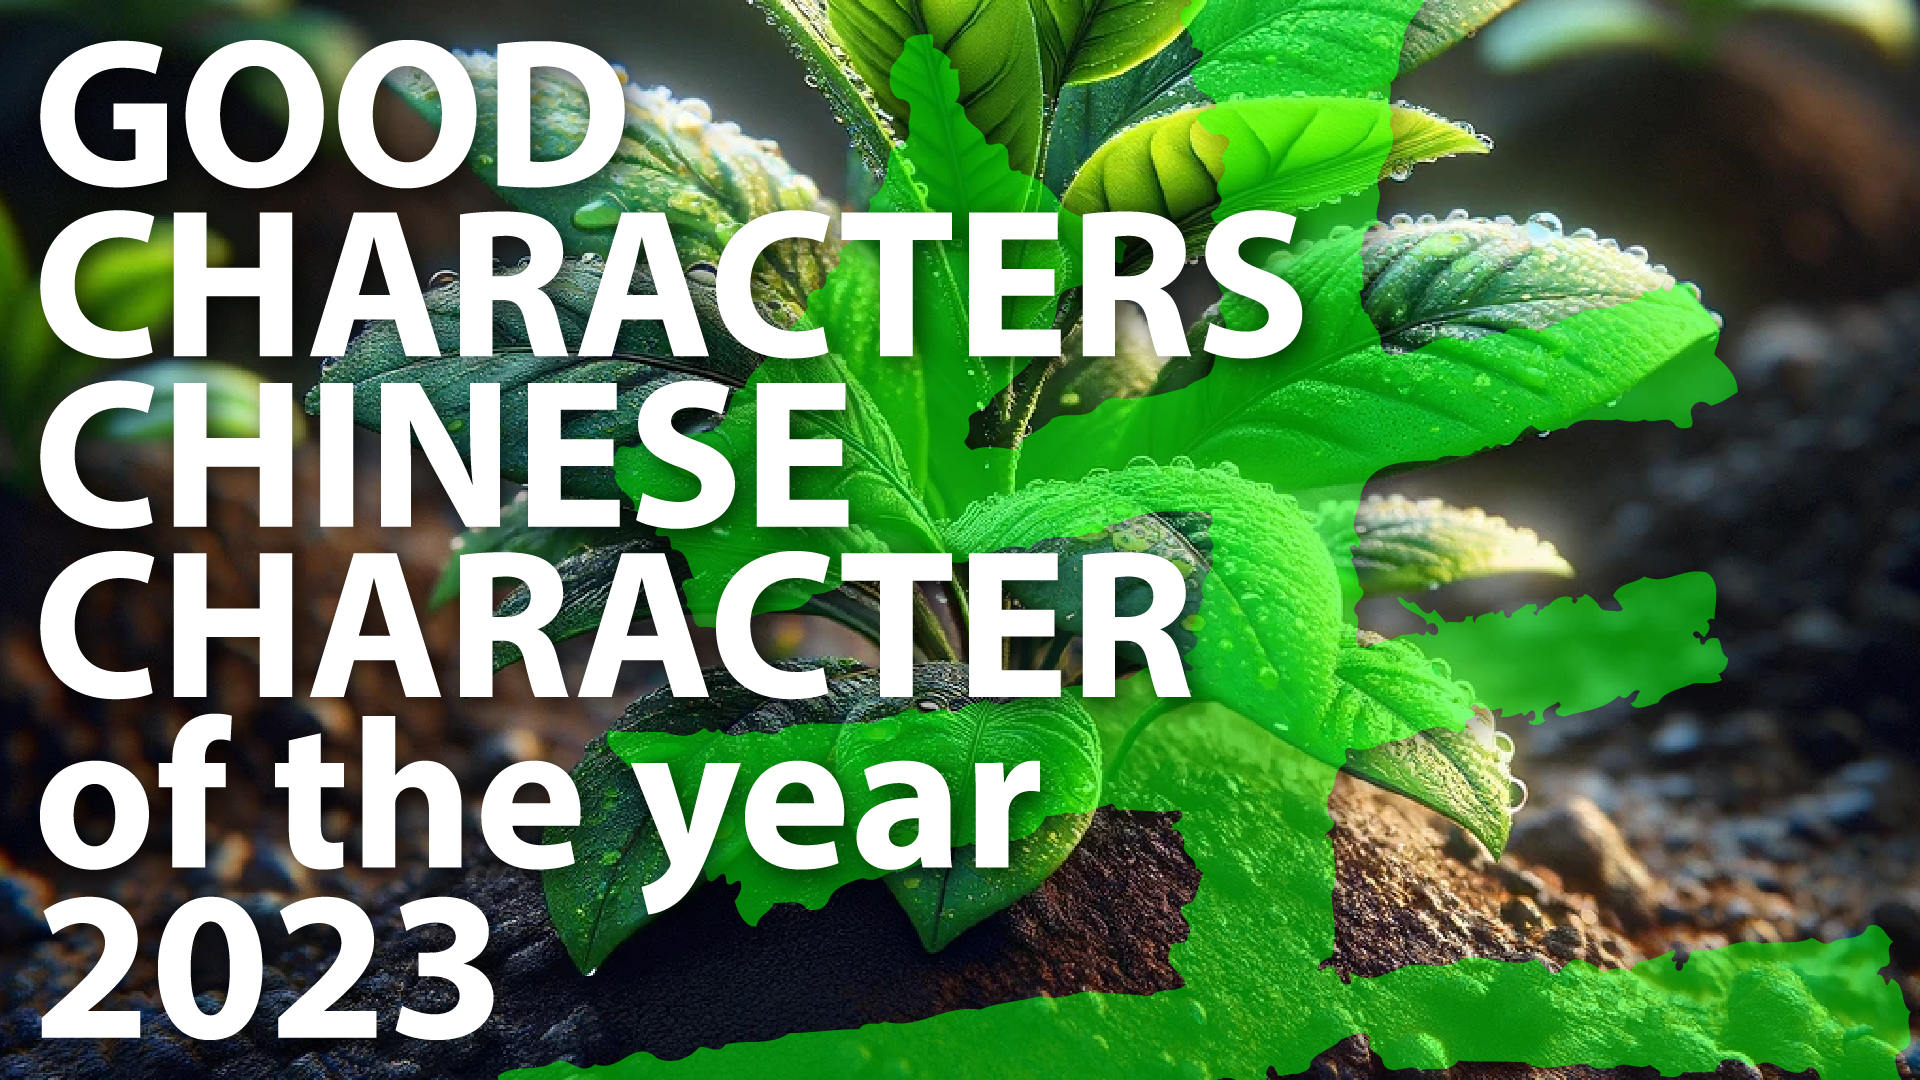 Video laden: Diese Präsentation bietet Informationen über die Fachkompetenz von Good Characters bei der Entwicklung wichtiger und gesetzlich vorgeschriebener chinesischer Namen.